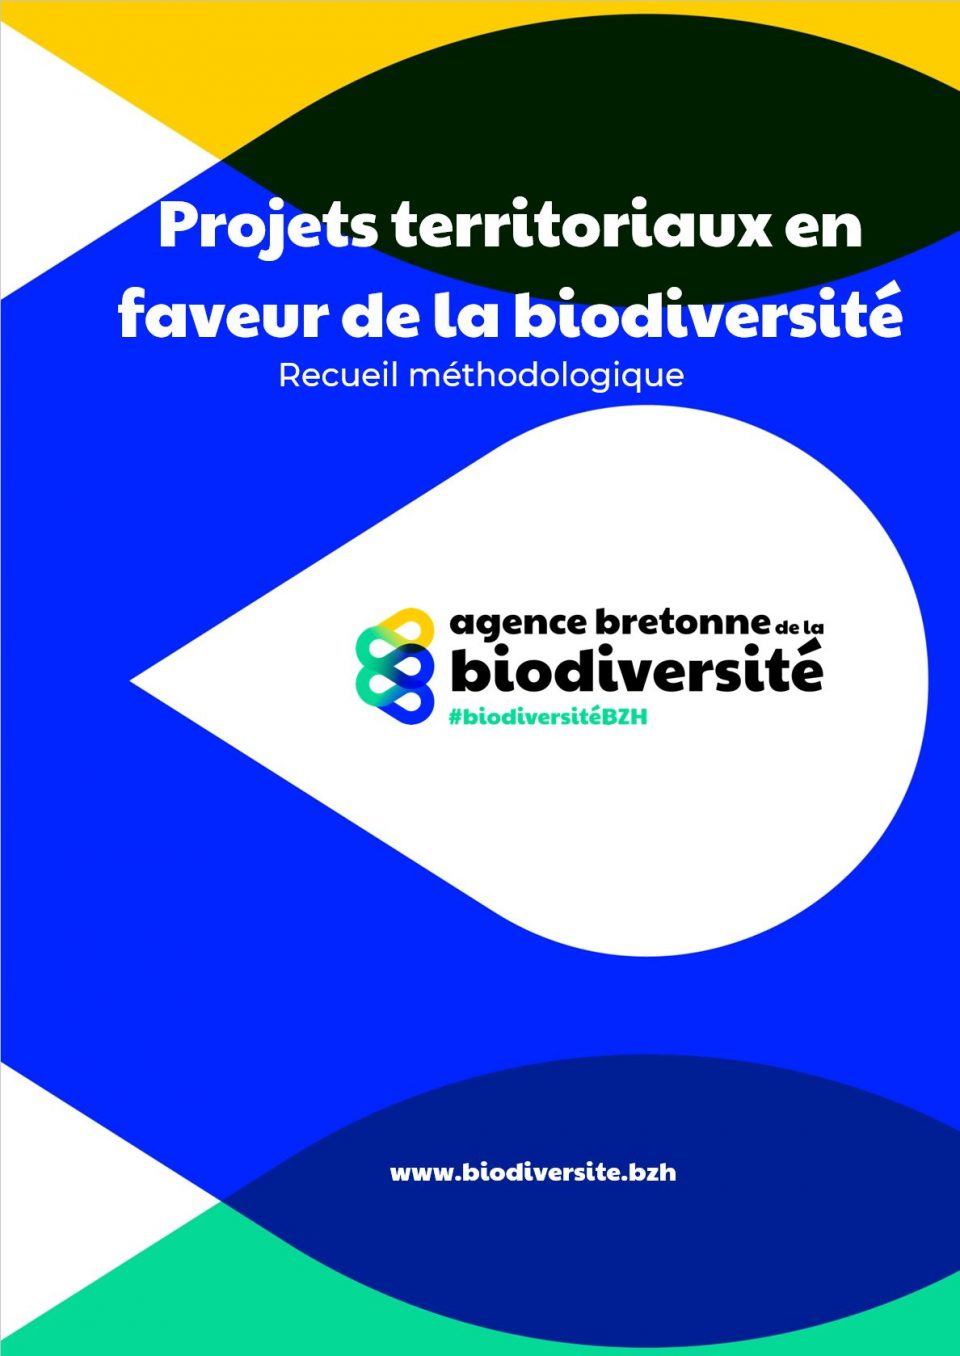 Convention multipartenariale pour l'acquisition de données de biodiversité: l'exemple de Lannion-Trégor Communauté